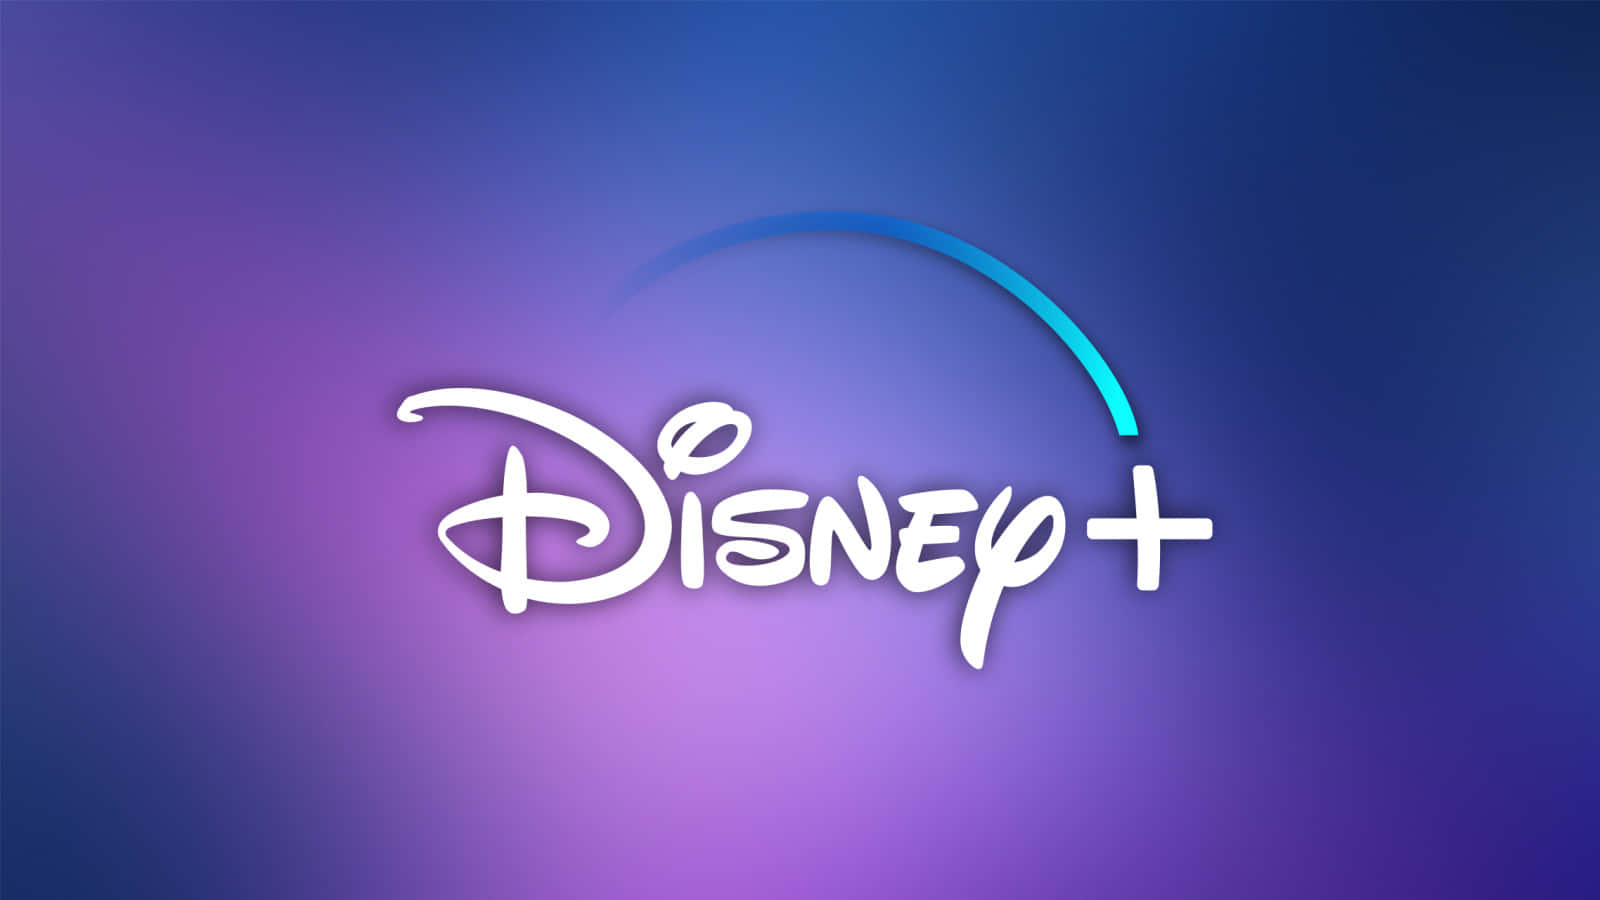 Unacollezione Mozzafiato Di Disney Plus In Mostra